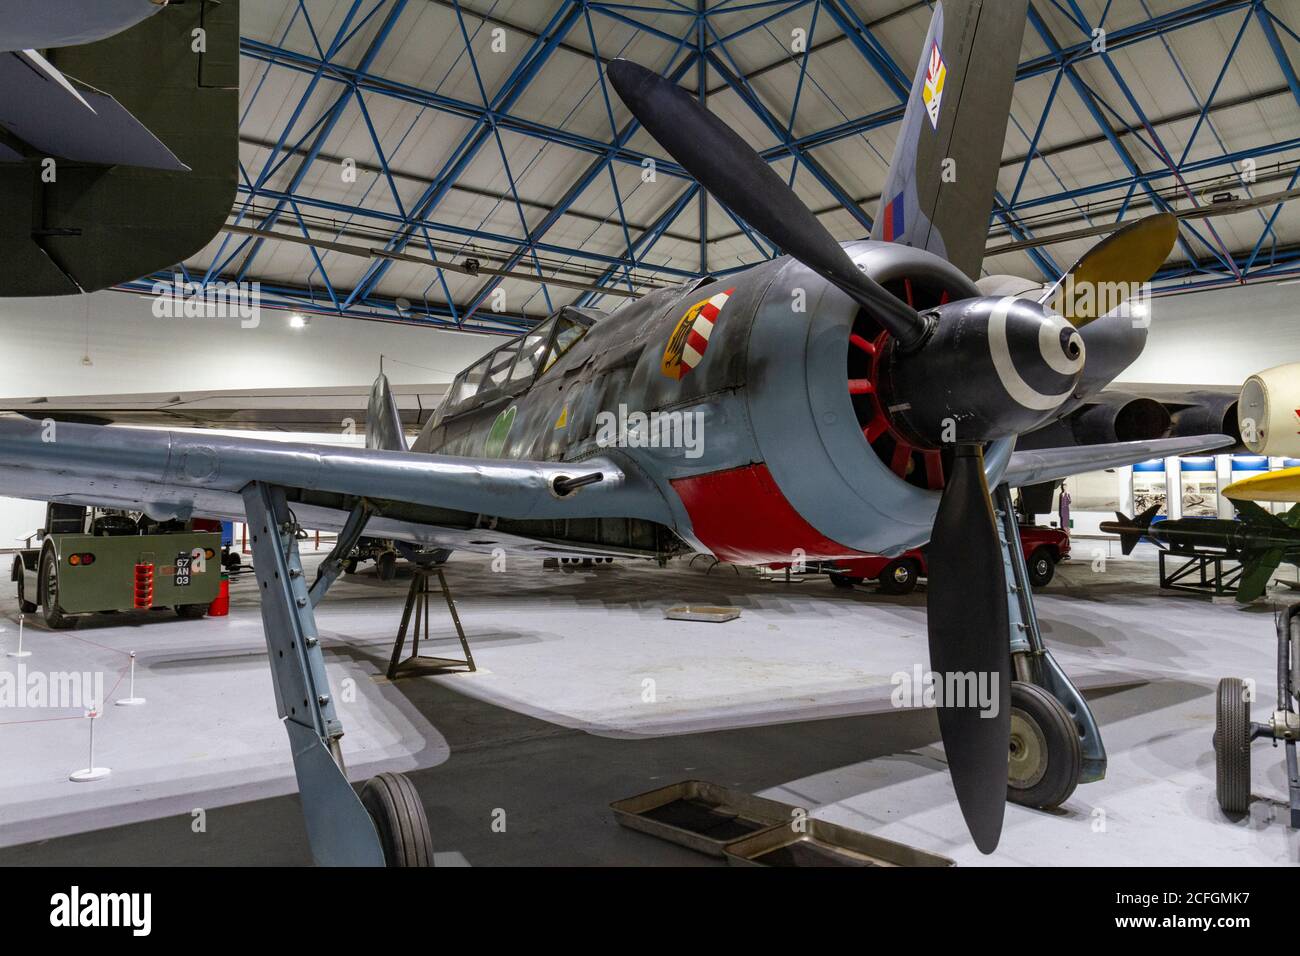 Un avion de chasse Focke Wulf Fw190 (1941-45) exposé au RAF Museum, Londres, Royaume-Uni. Banque D'Images